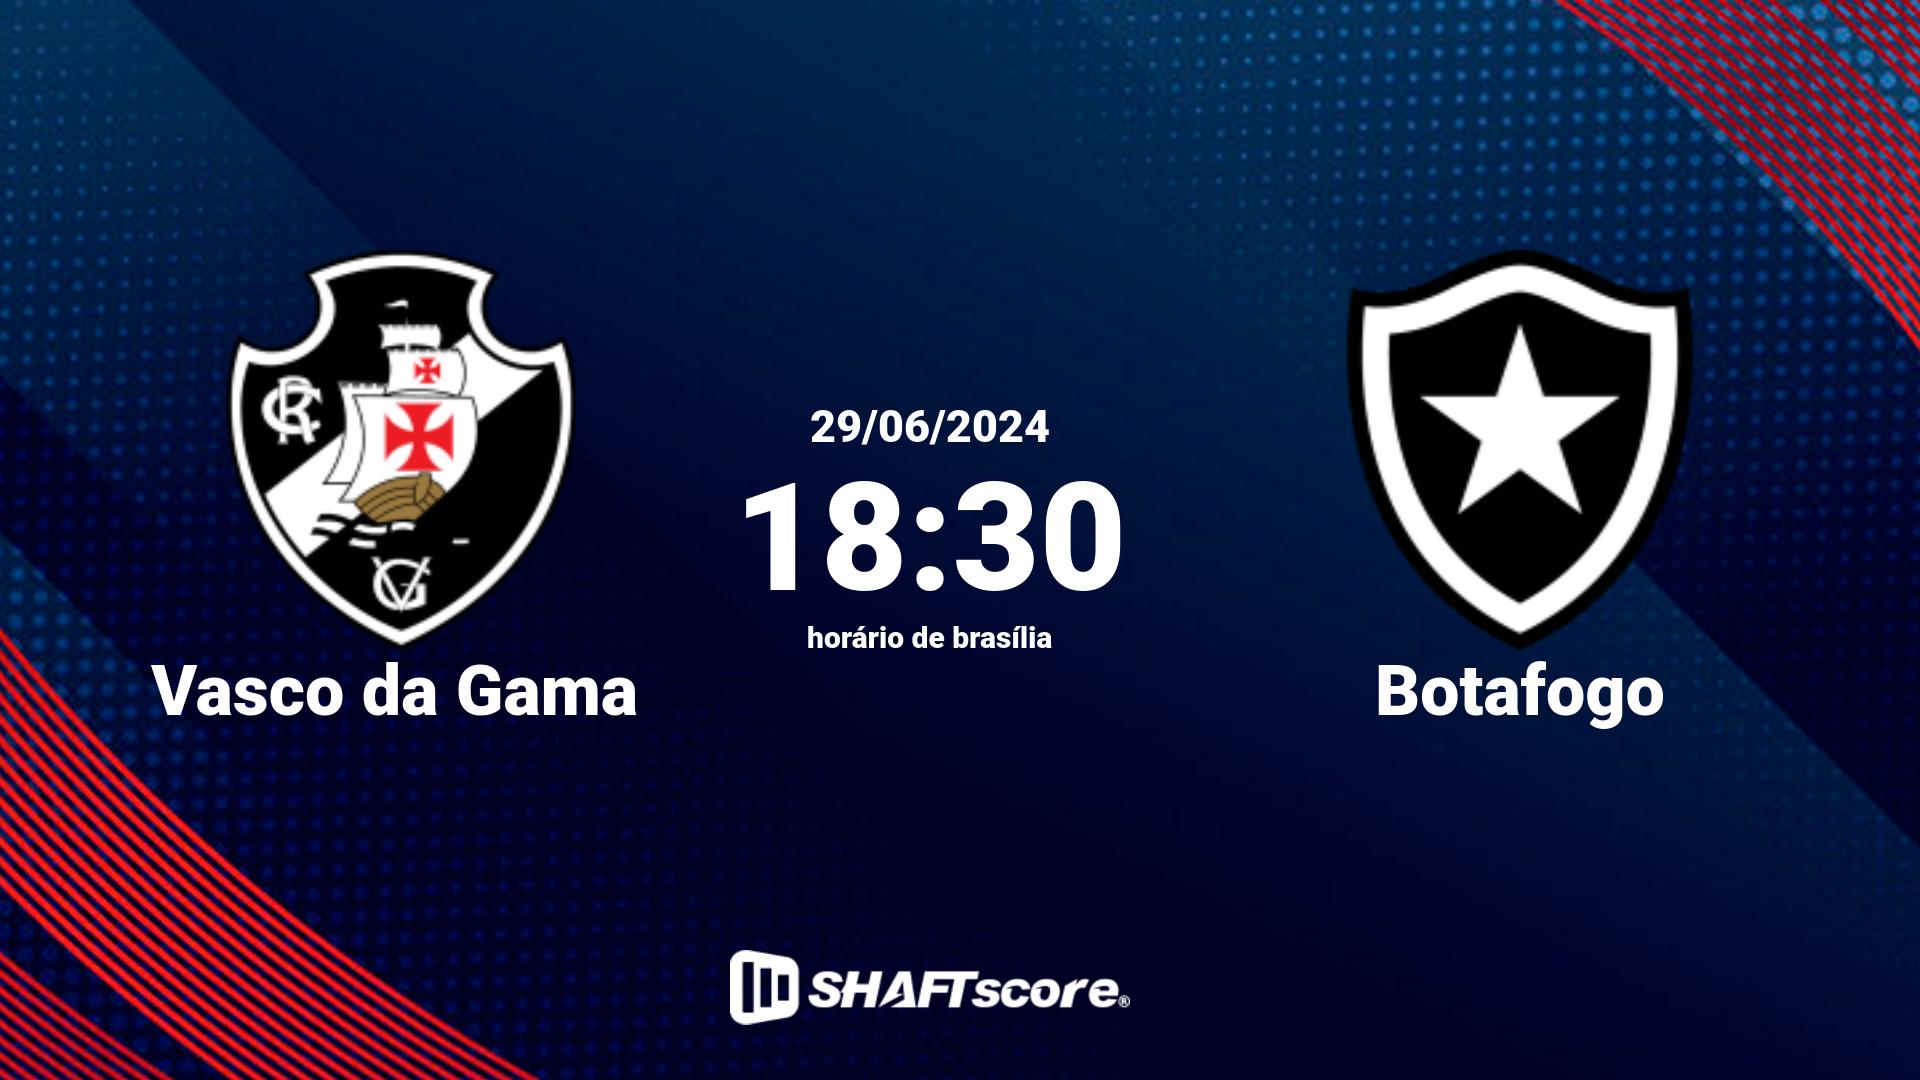 Estatísticas do jogo Vasco da Gama vs Botafogo 29.06 18:30